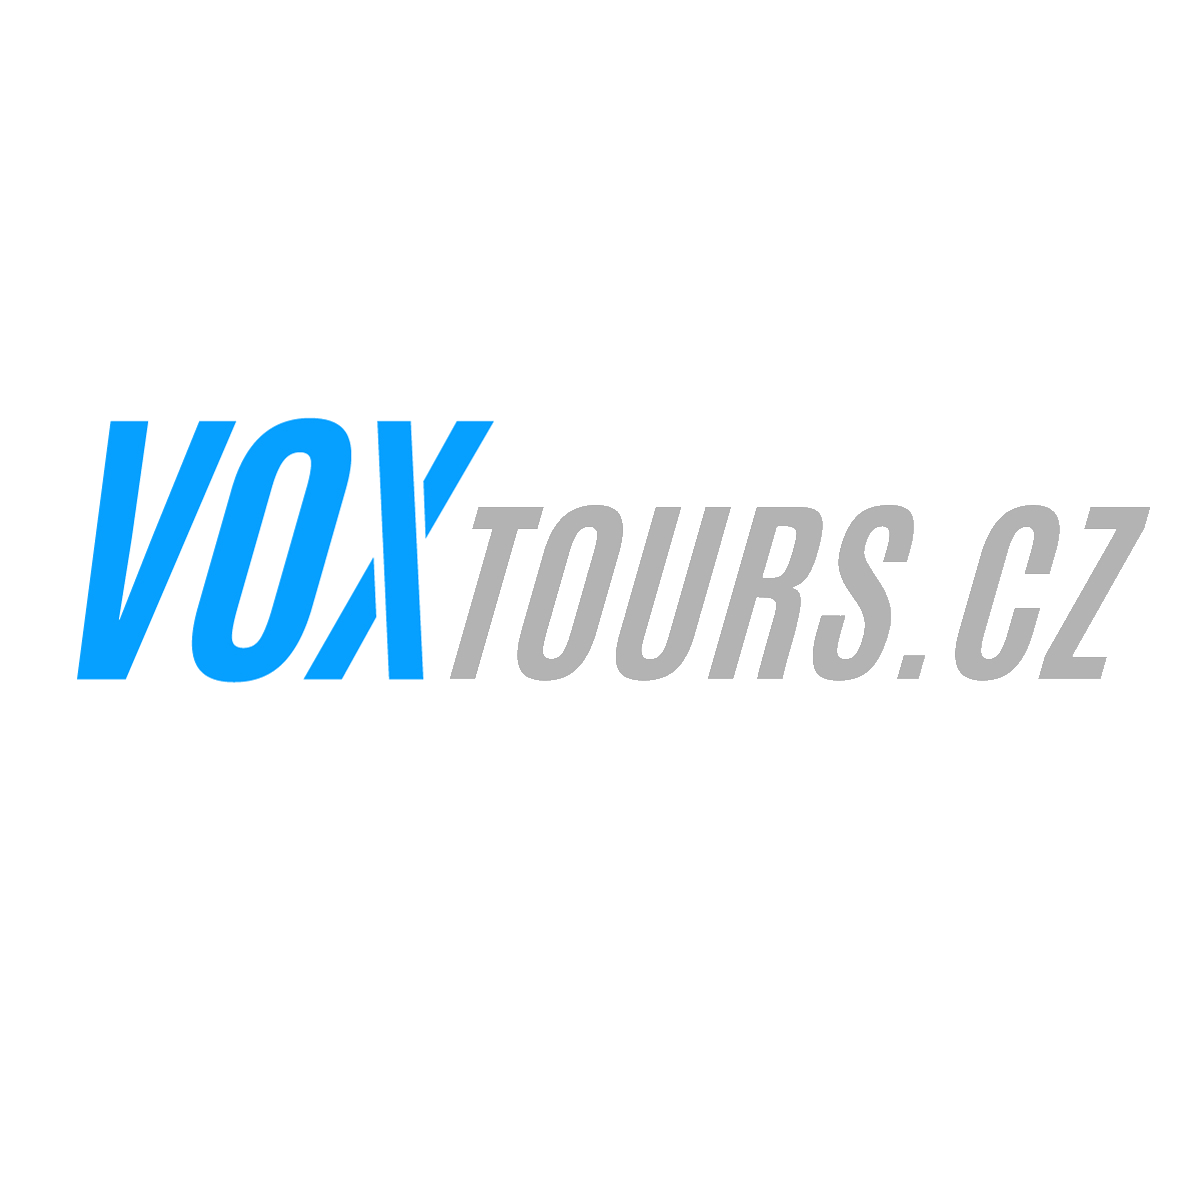 VOXtours.cz